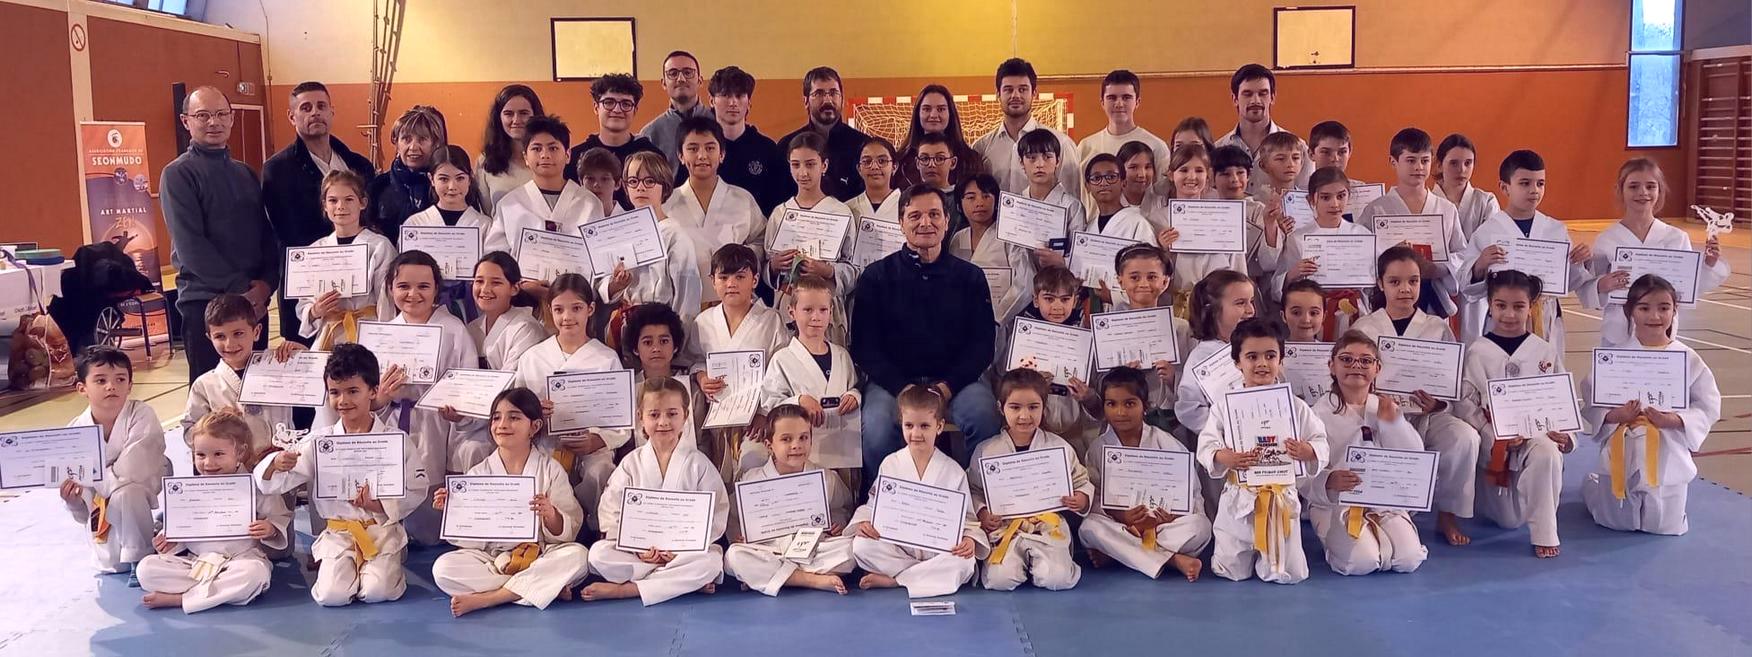 Passage de grade taekwondo du groupe des enfants